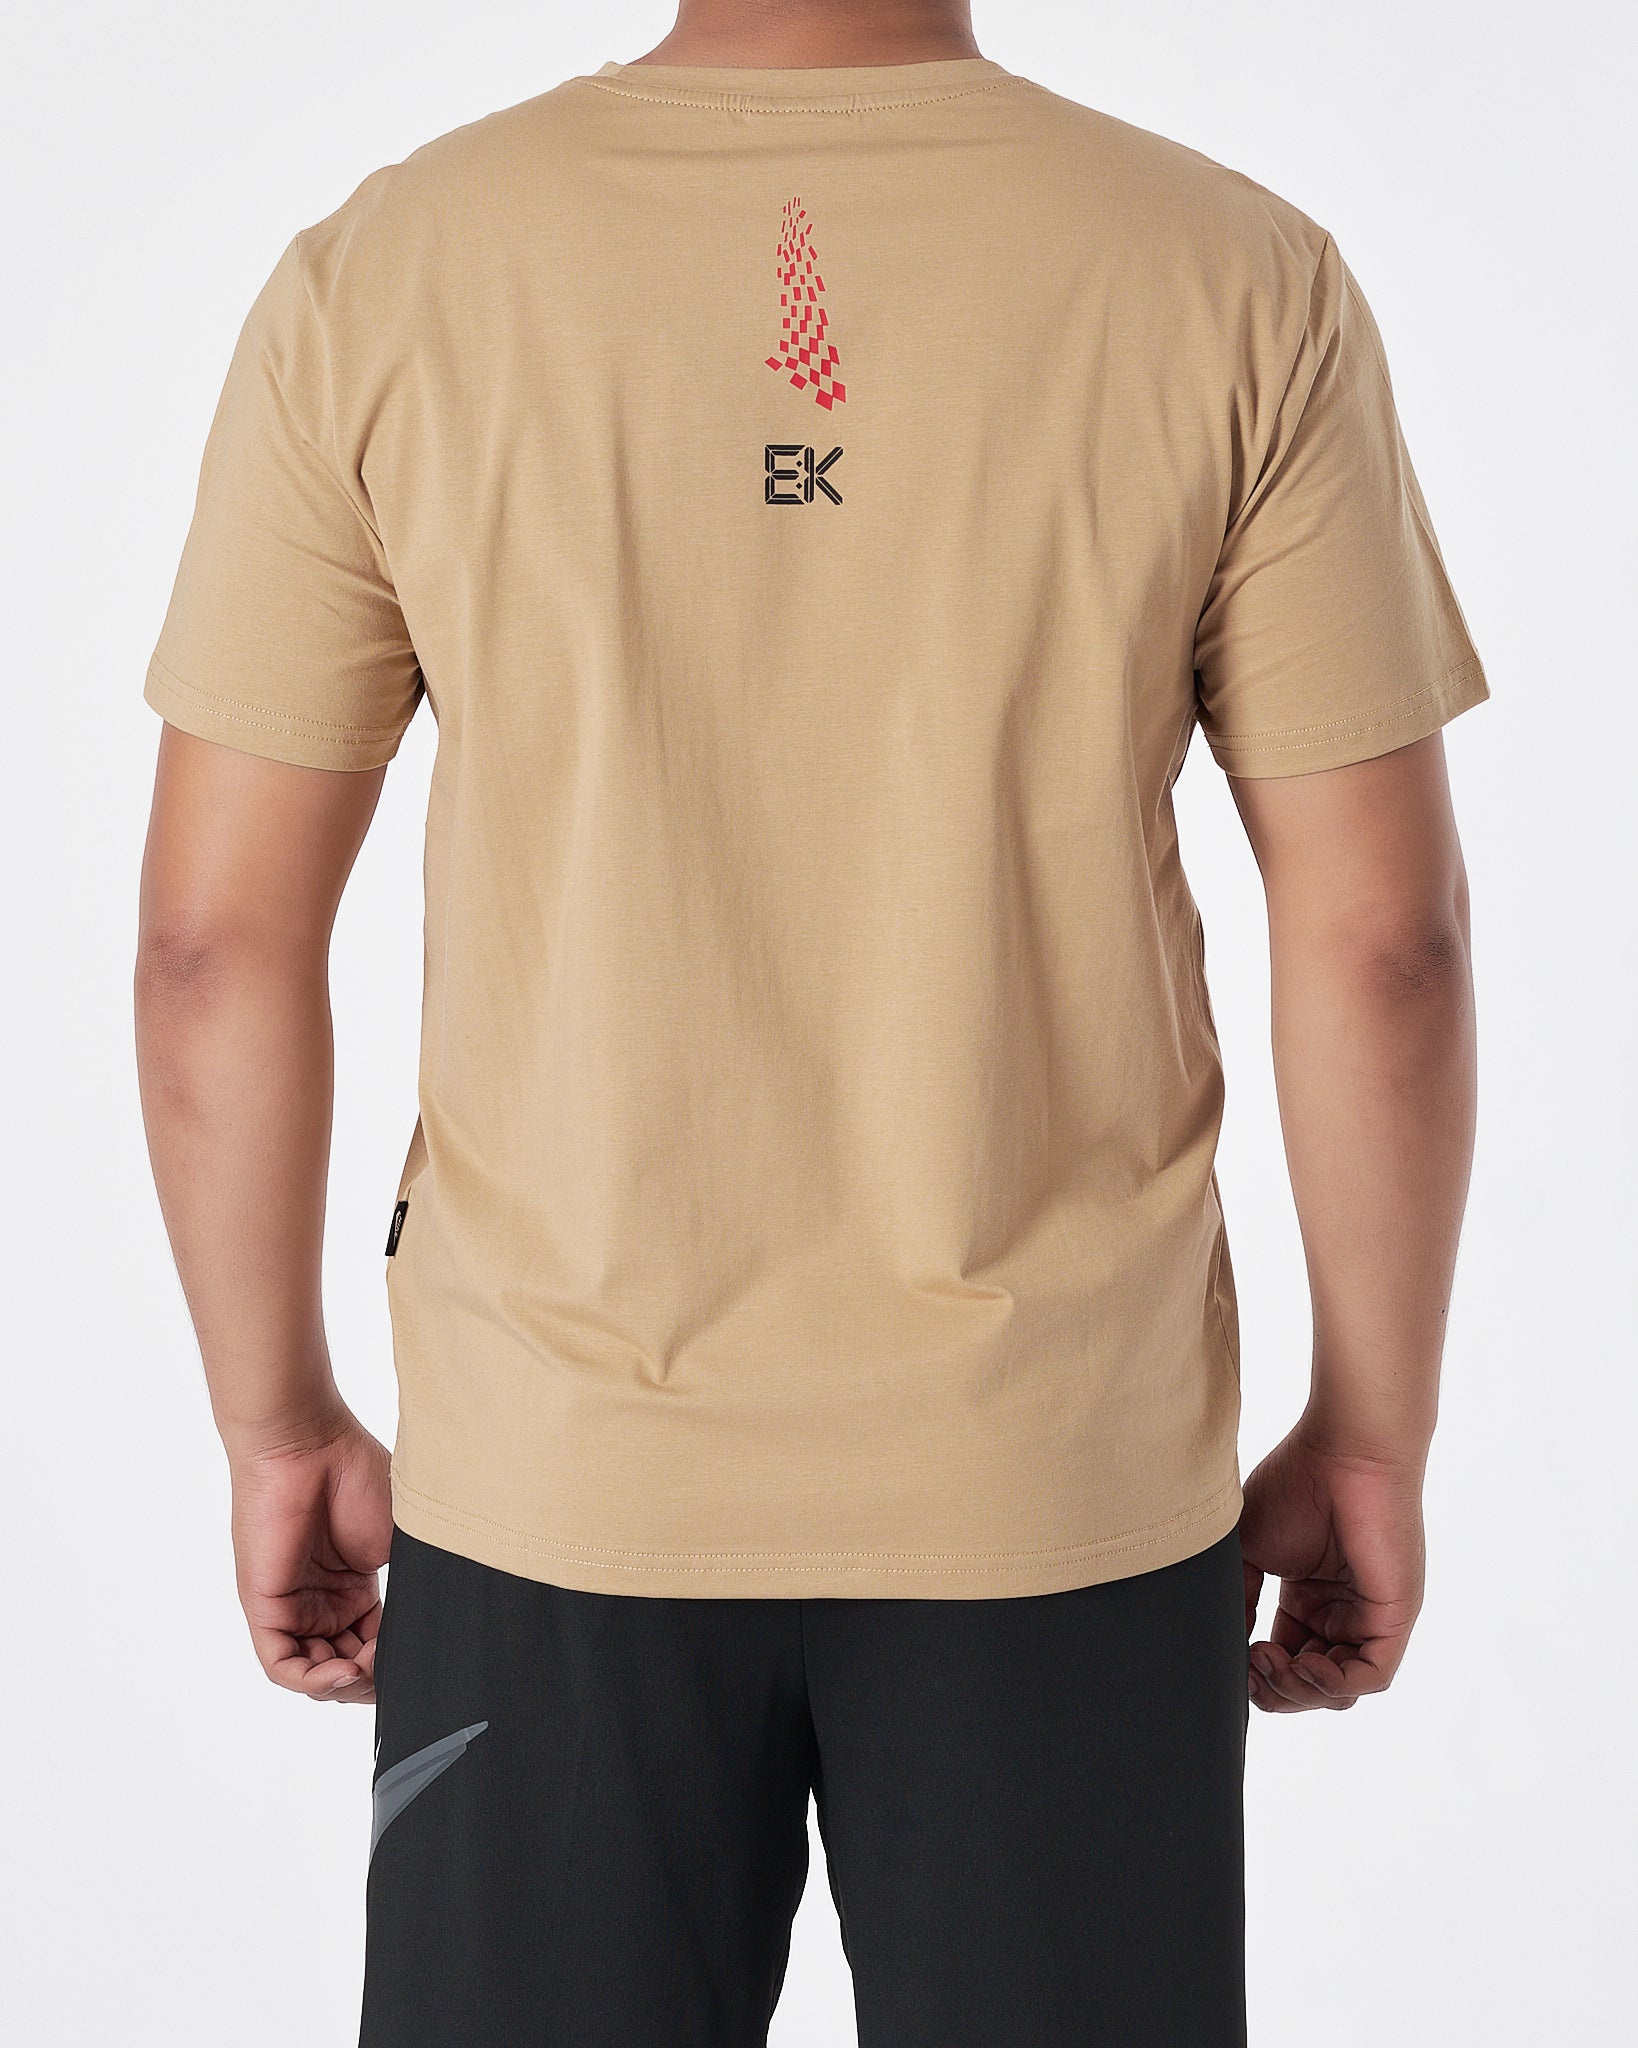 NIK Swooh Logo Printed Men Cream T-Shirt 14.50